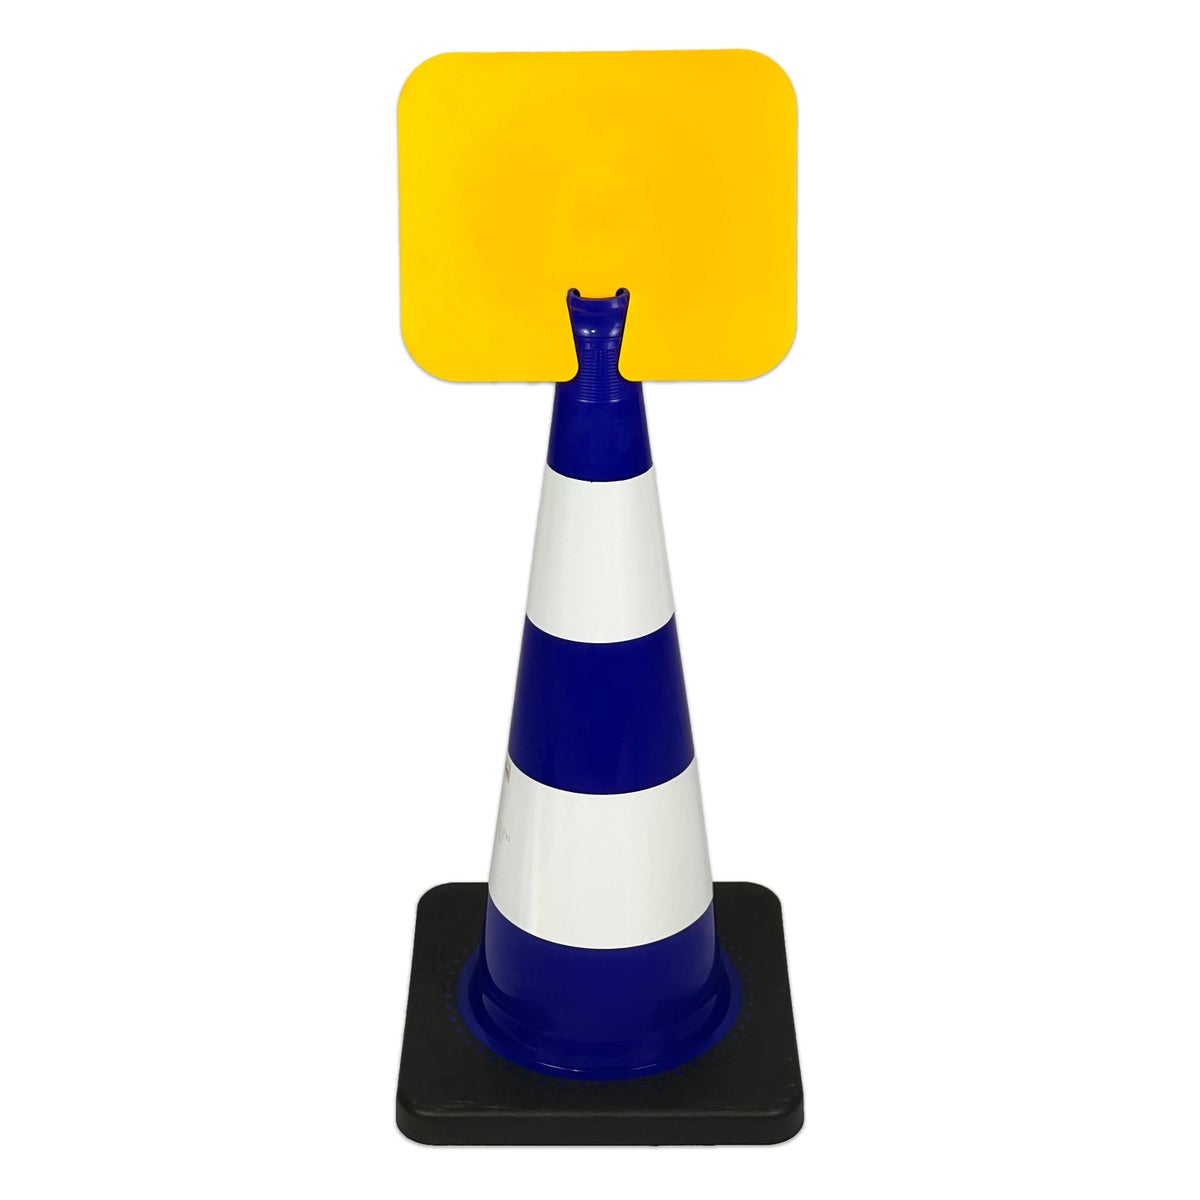 UvV Flex Kegel 50 oder 75cm weiße Streifen + Aufsteckschild Wunschtext / Kegel 750 mm / blau/gelb - gelbes Schild